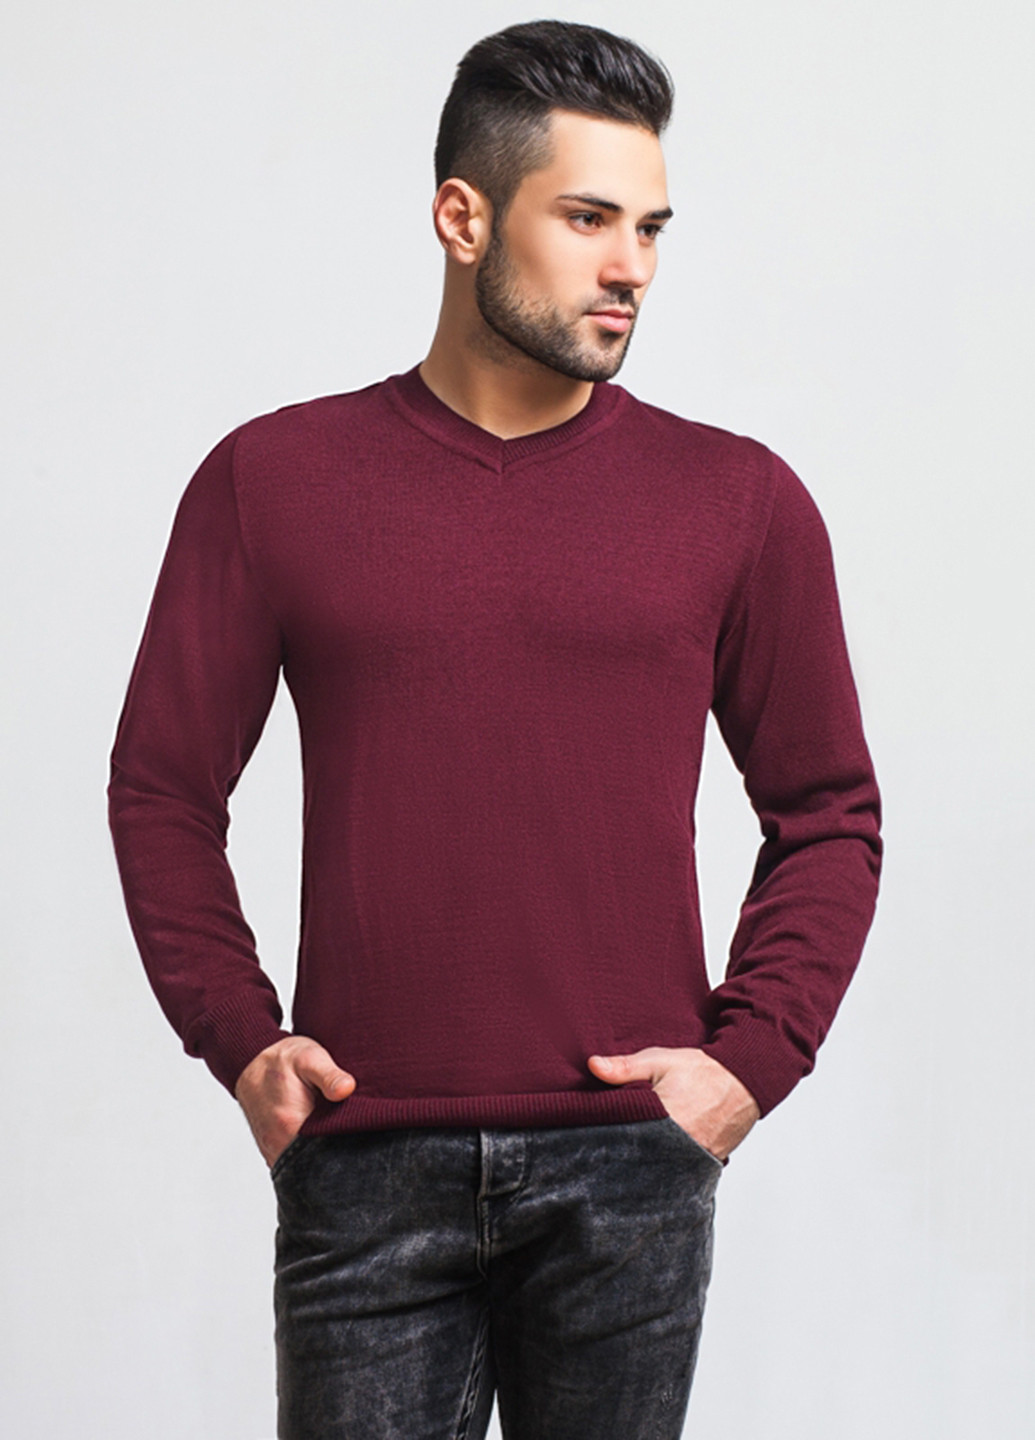 Бордовый демисезонный пуловер пуловер SVTR